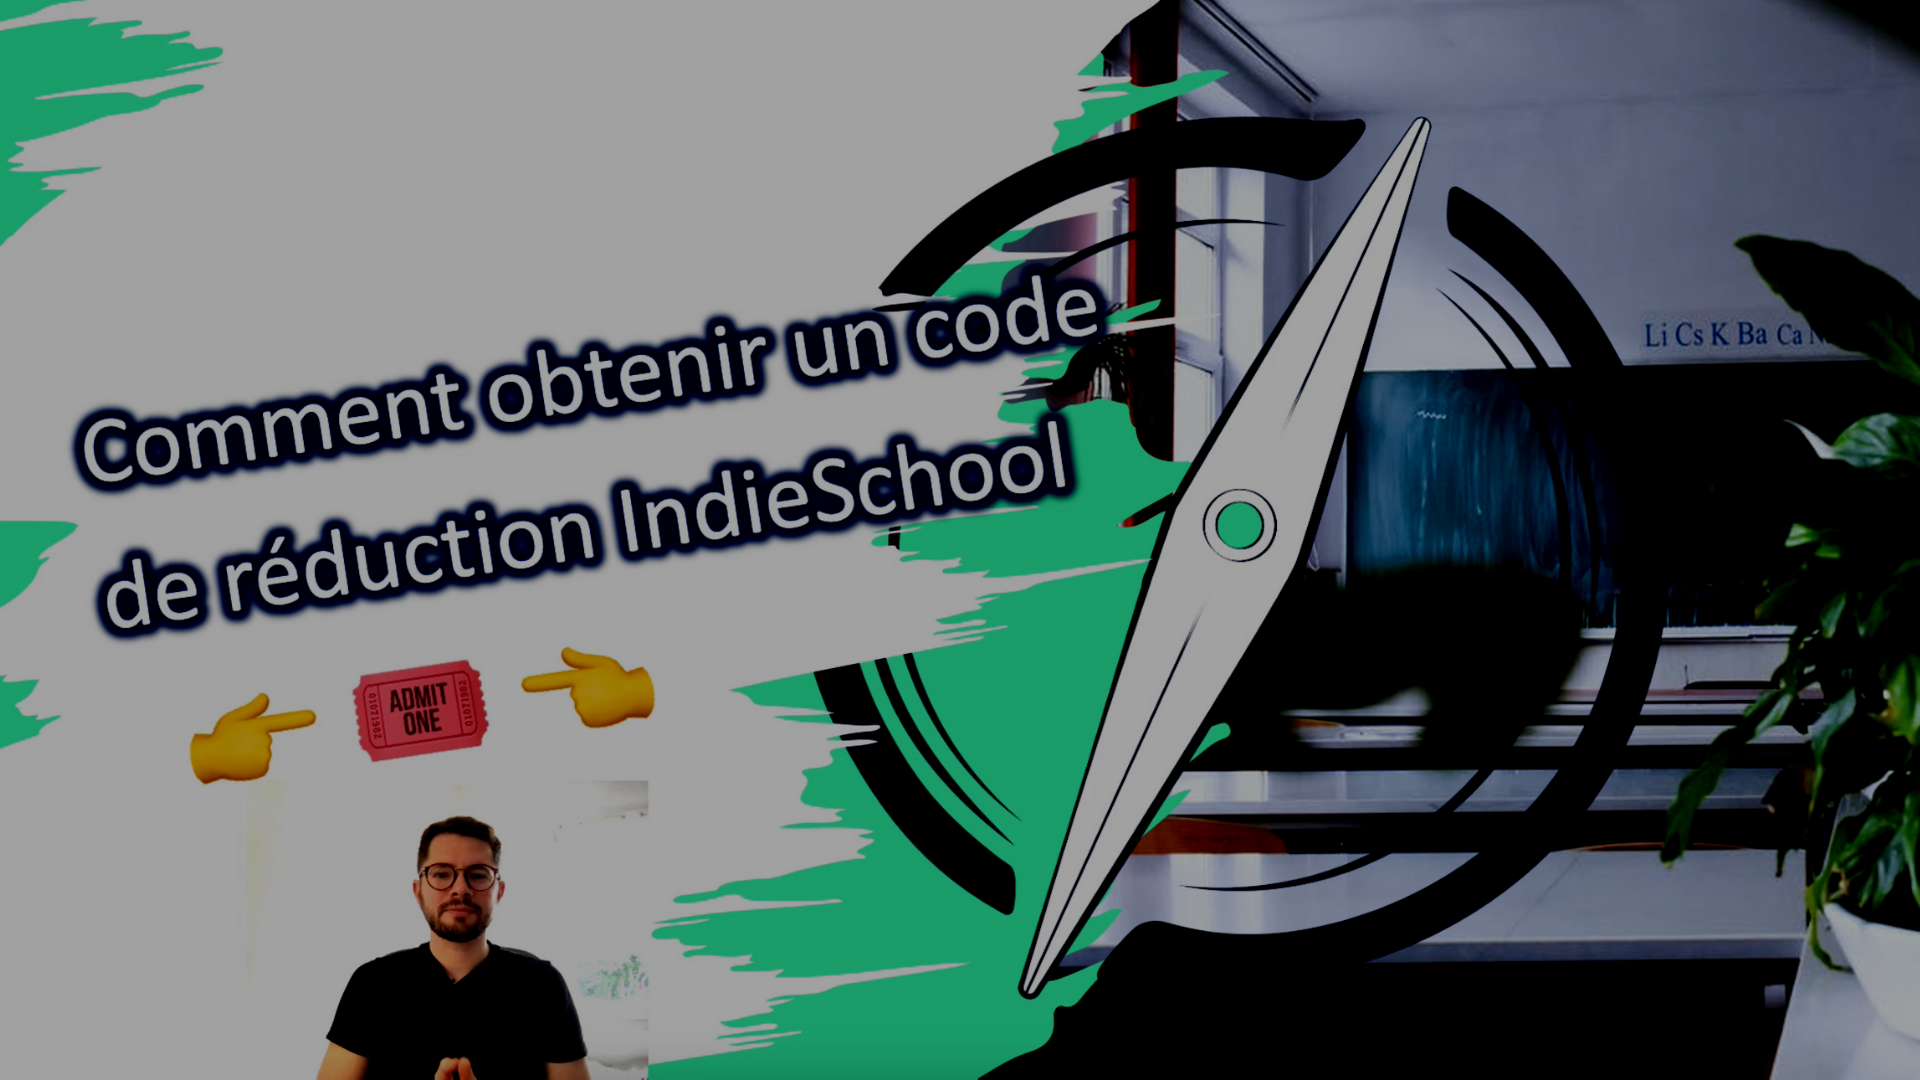 Comment obtenir un code de réduction IndieSchool